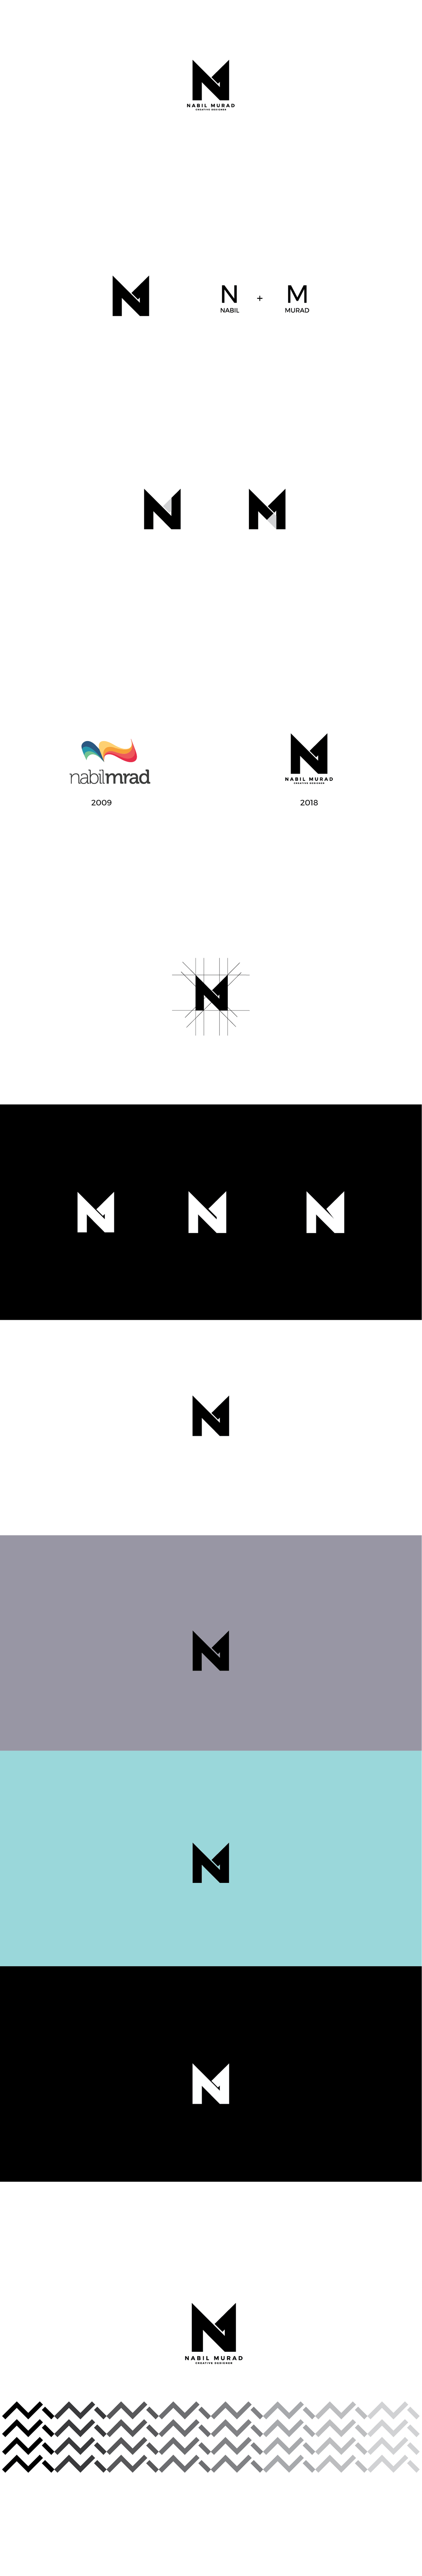 Murad Logo - Nabil Murad Logo on Behance